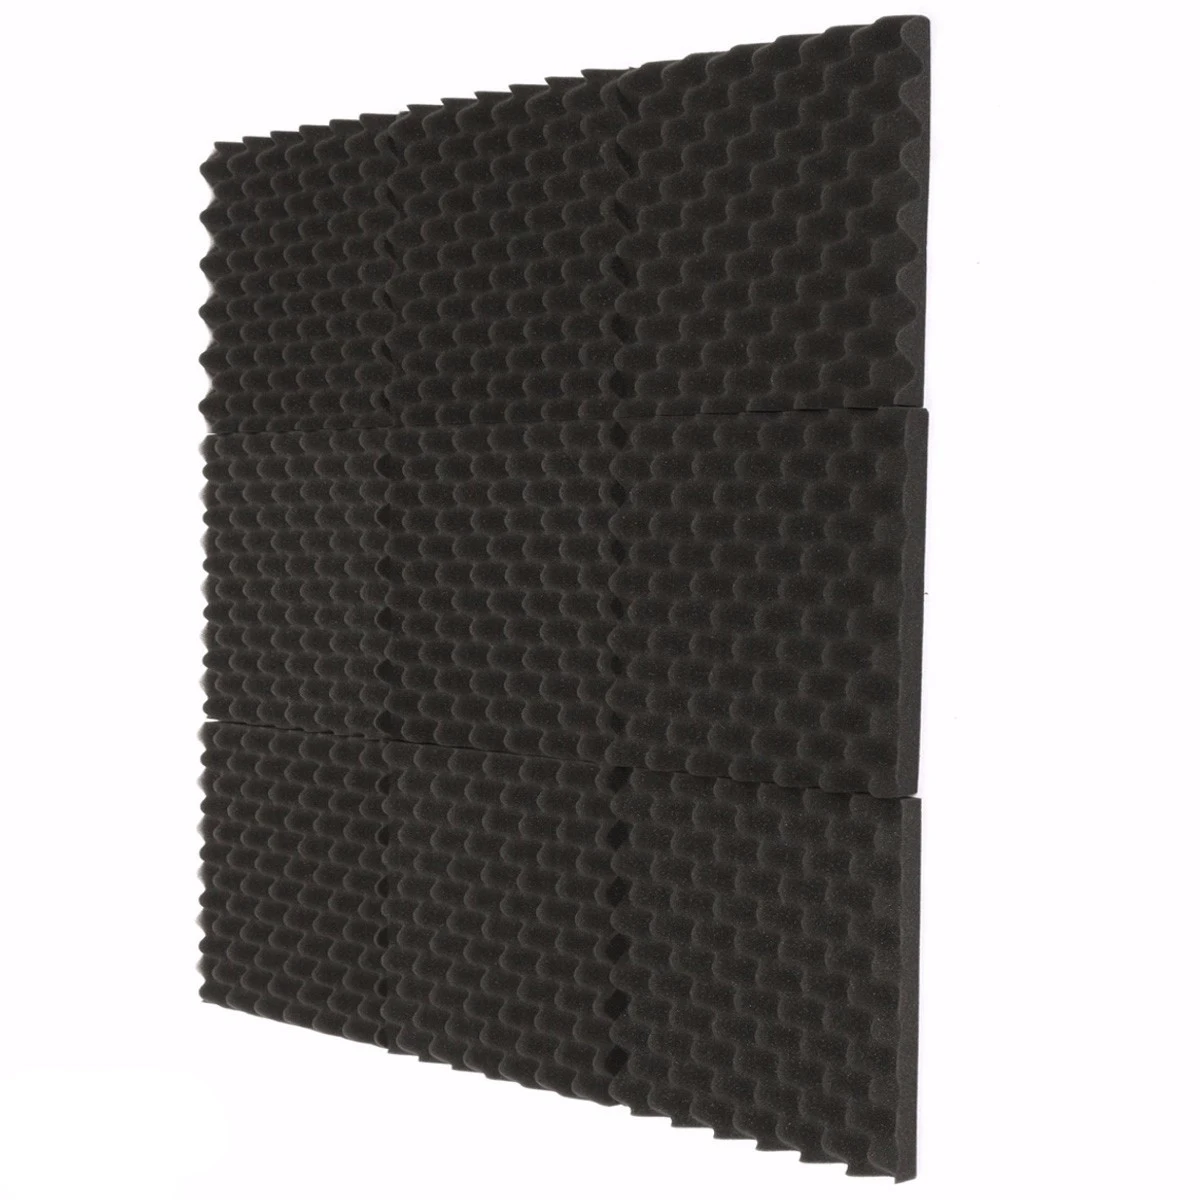 3 шт 300x300x40 мм звукоизоляция пена Студия Акустическая Пена Звукоизоляционная абсорбционная обработка панель плитка Клин пенополиуретан - Цвет: Black